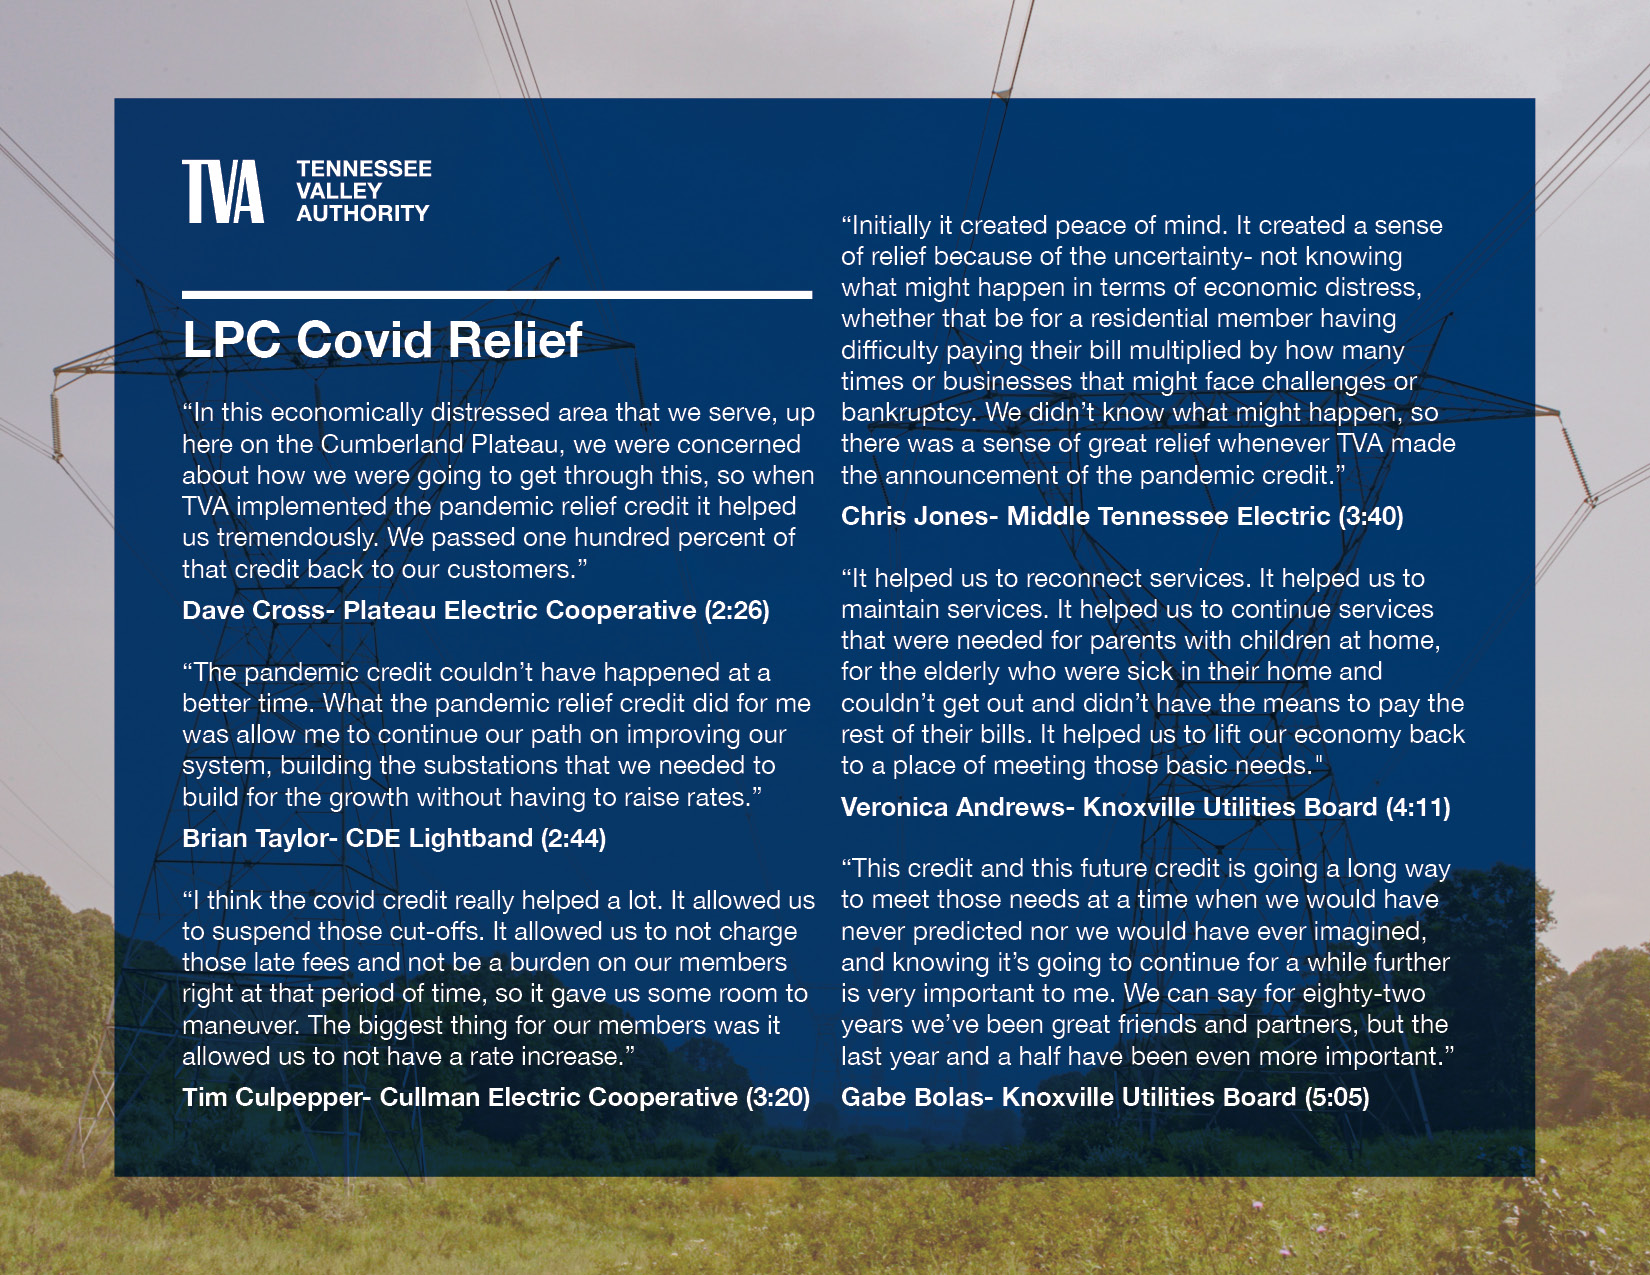 LPC Covid Relief Quotes